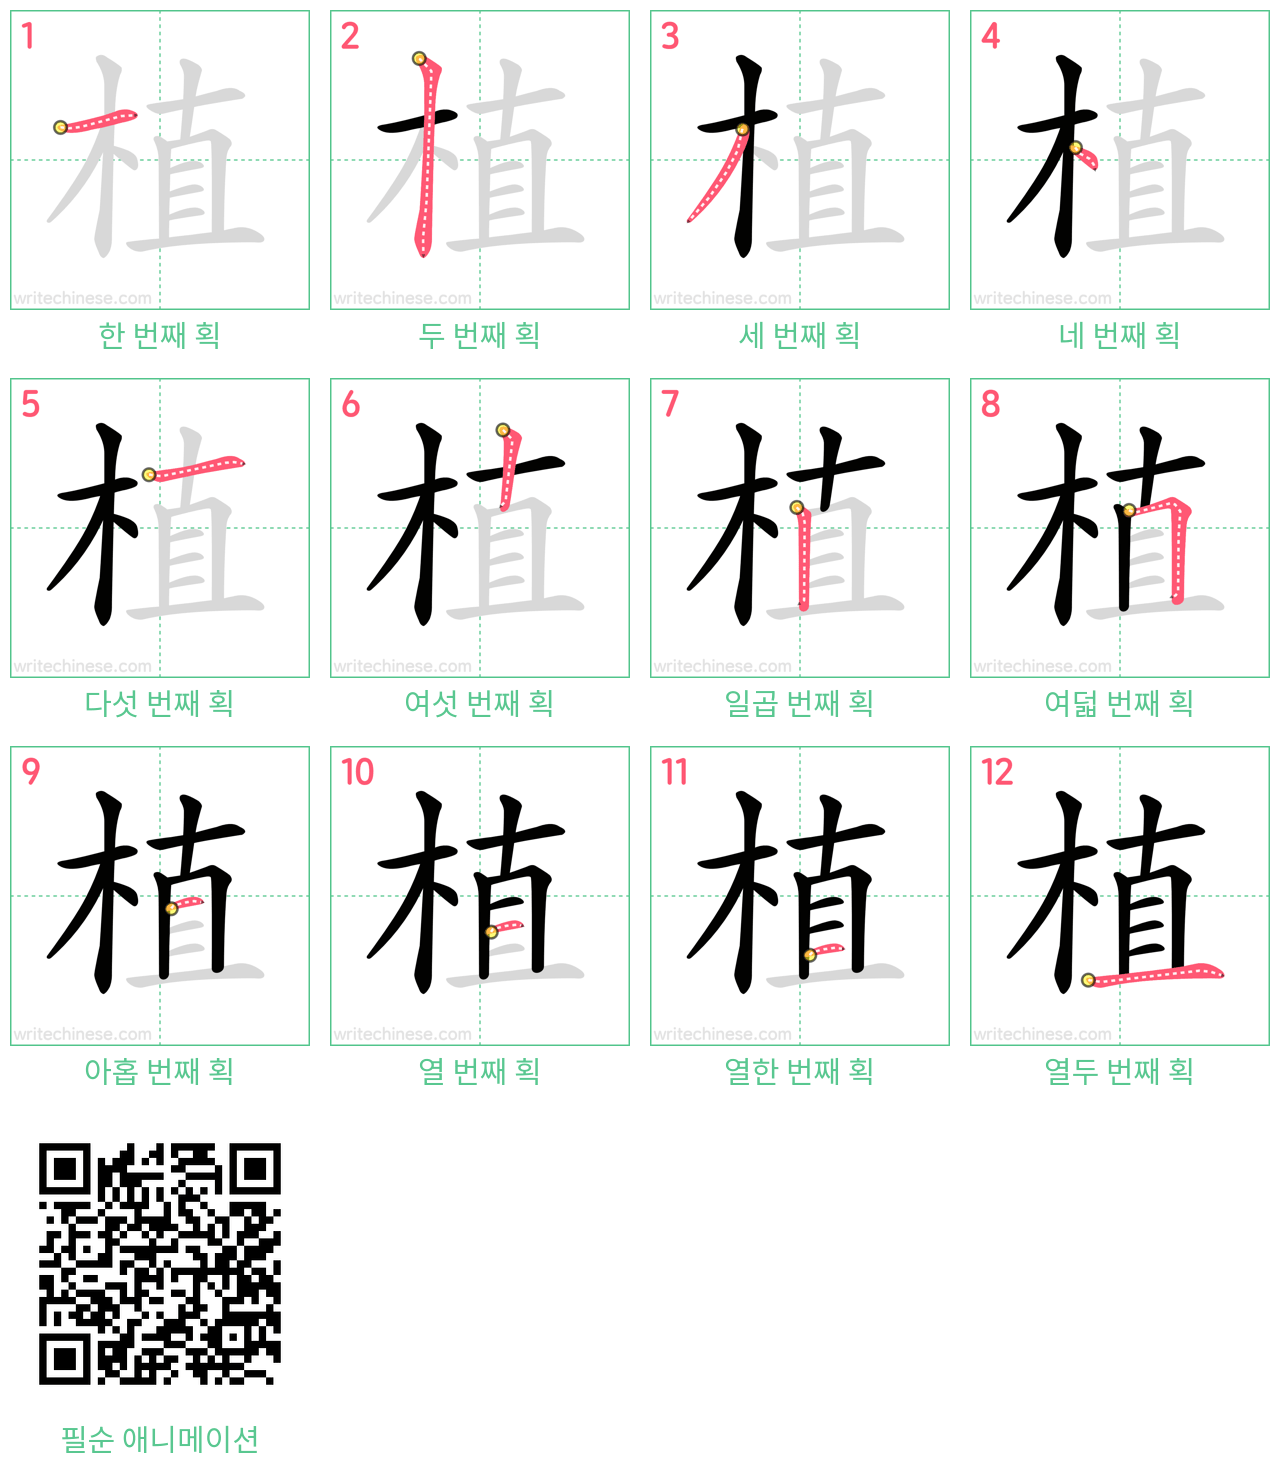 植 step-by-step stroke order diagrams